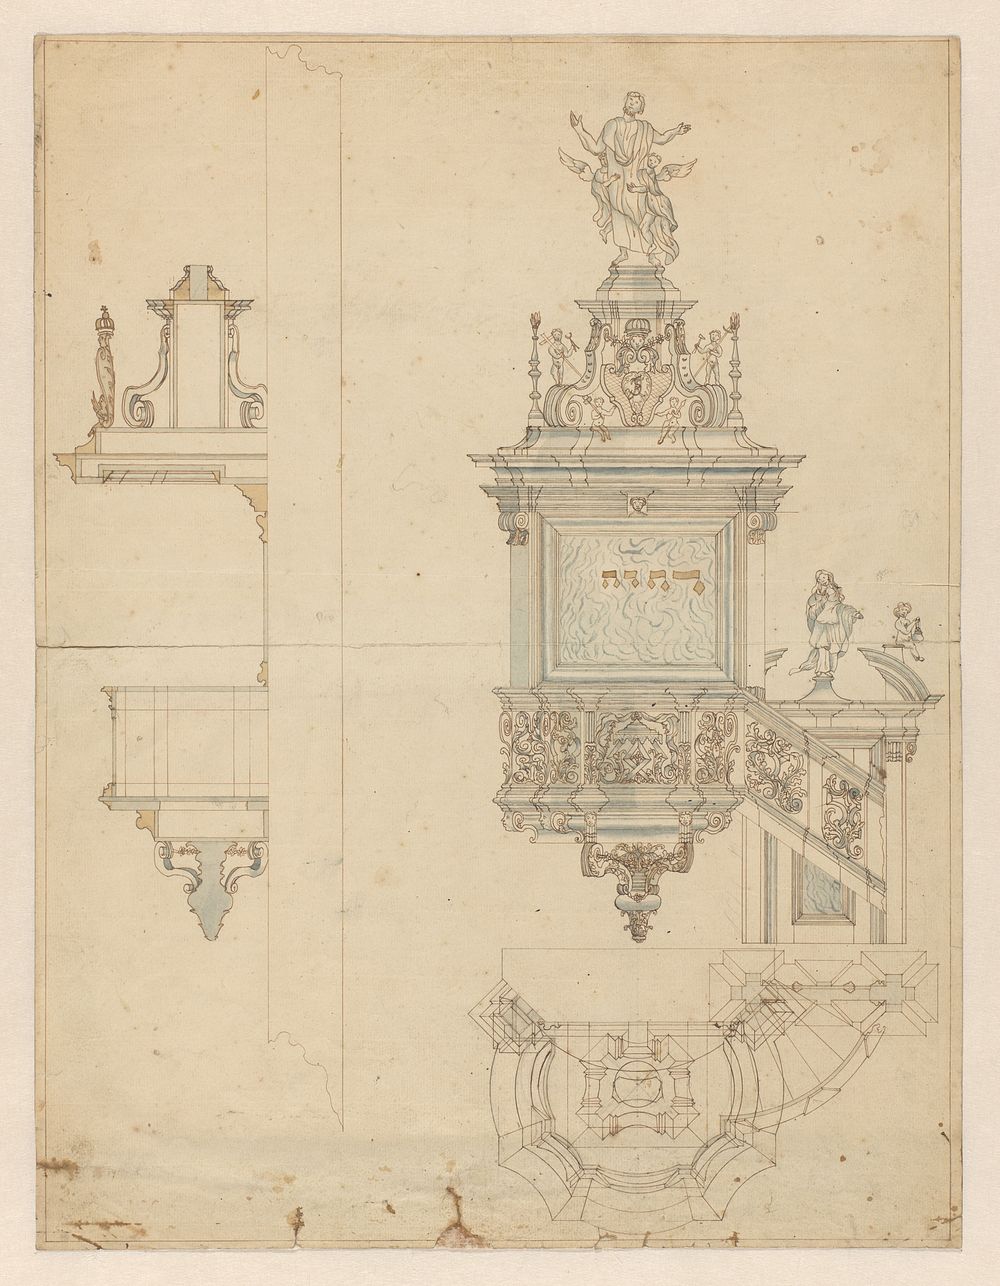 Ontwerp voor een preekstoel (c. 1720 - c. 1735) by anonymous